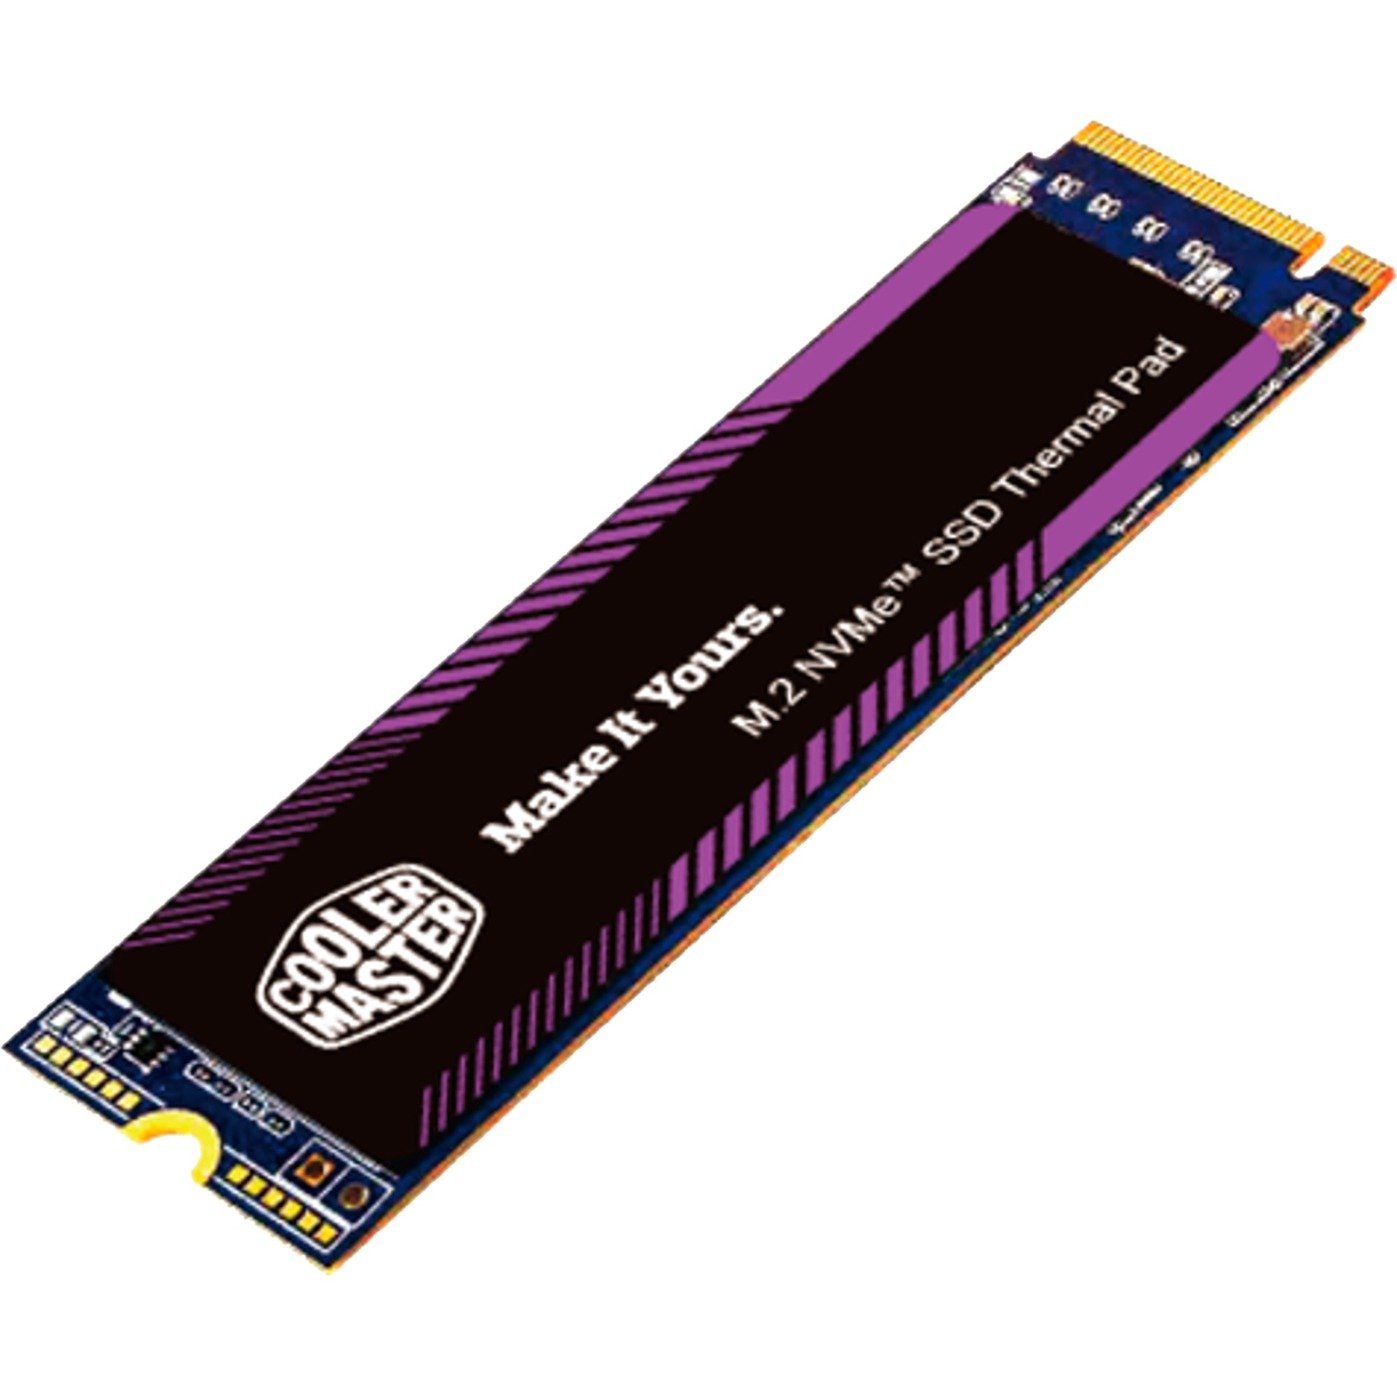 Image of Alternate - M.2 NVME SSD THERMAL PAD, Wärmeleitpads online einkaufen bei Alternate